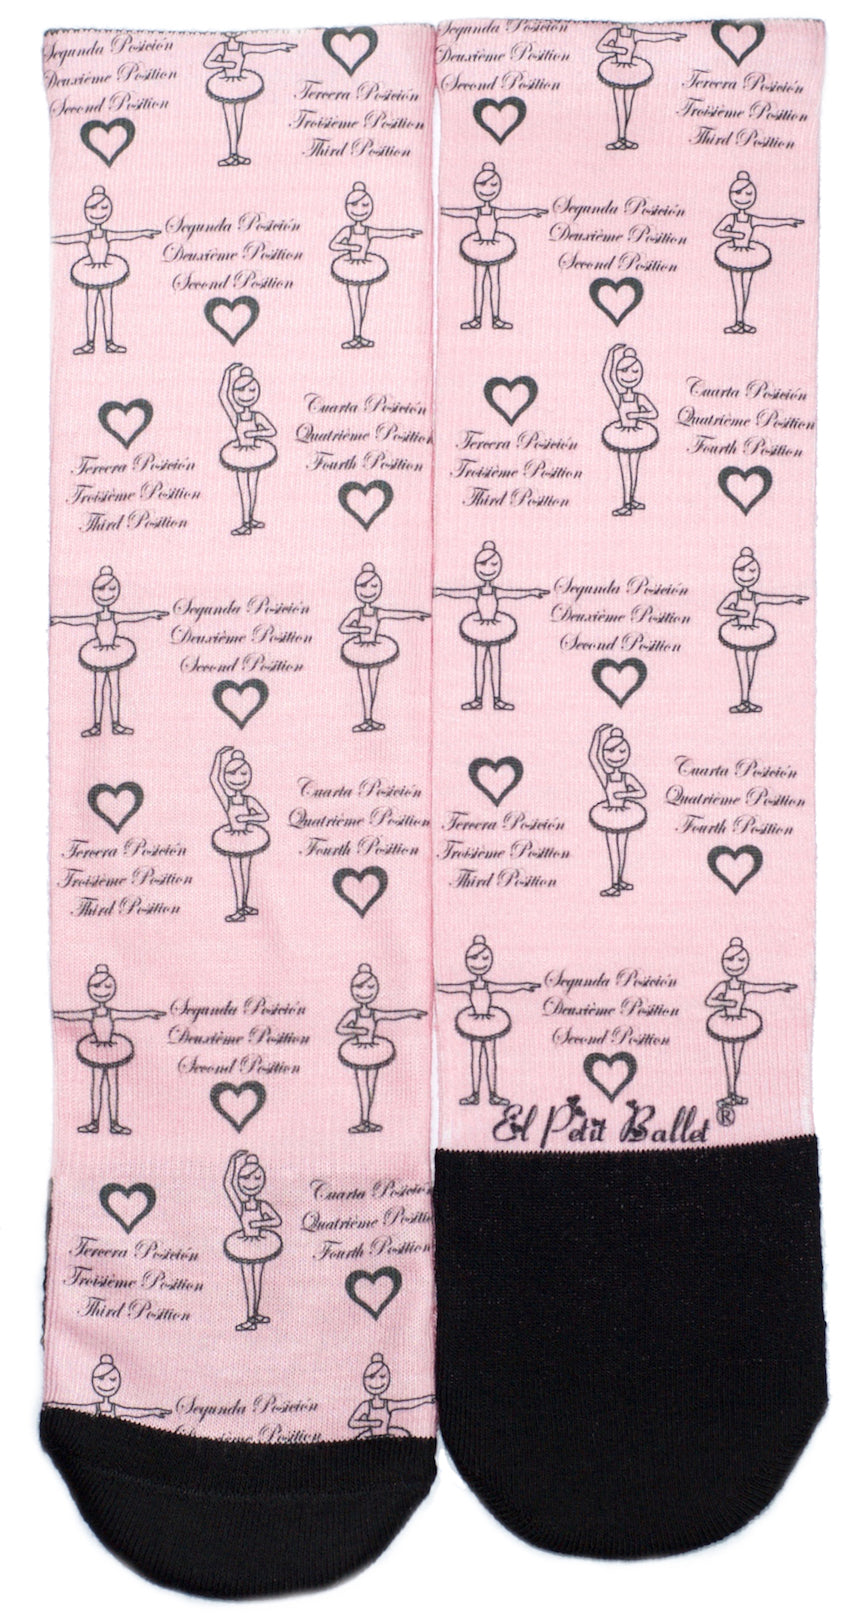 Calcetines CALCE de El Petit Ballet - YoBailo.Shop